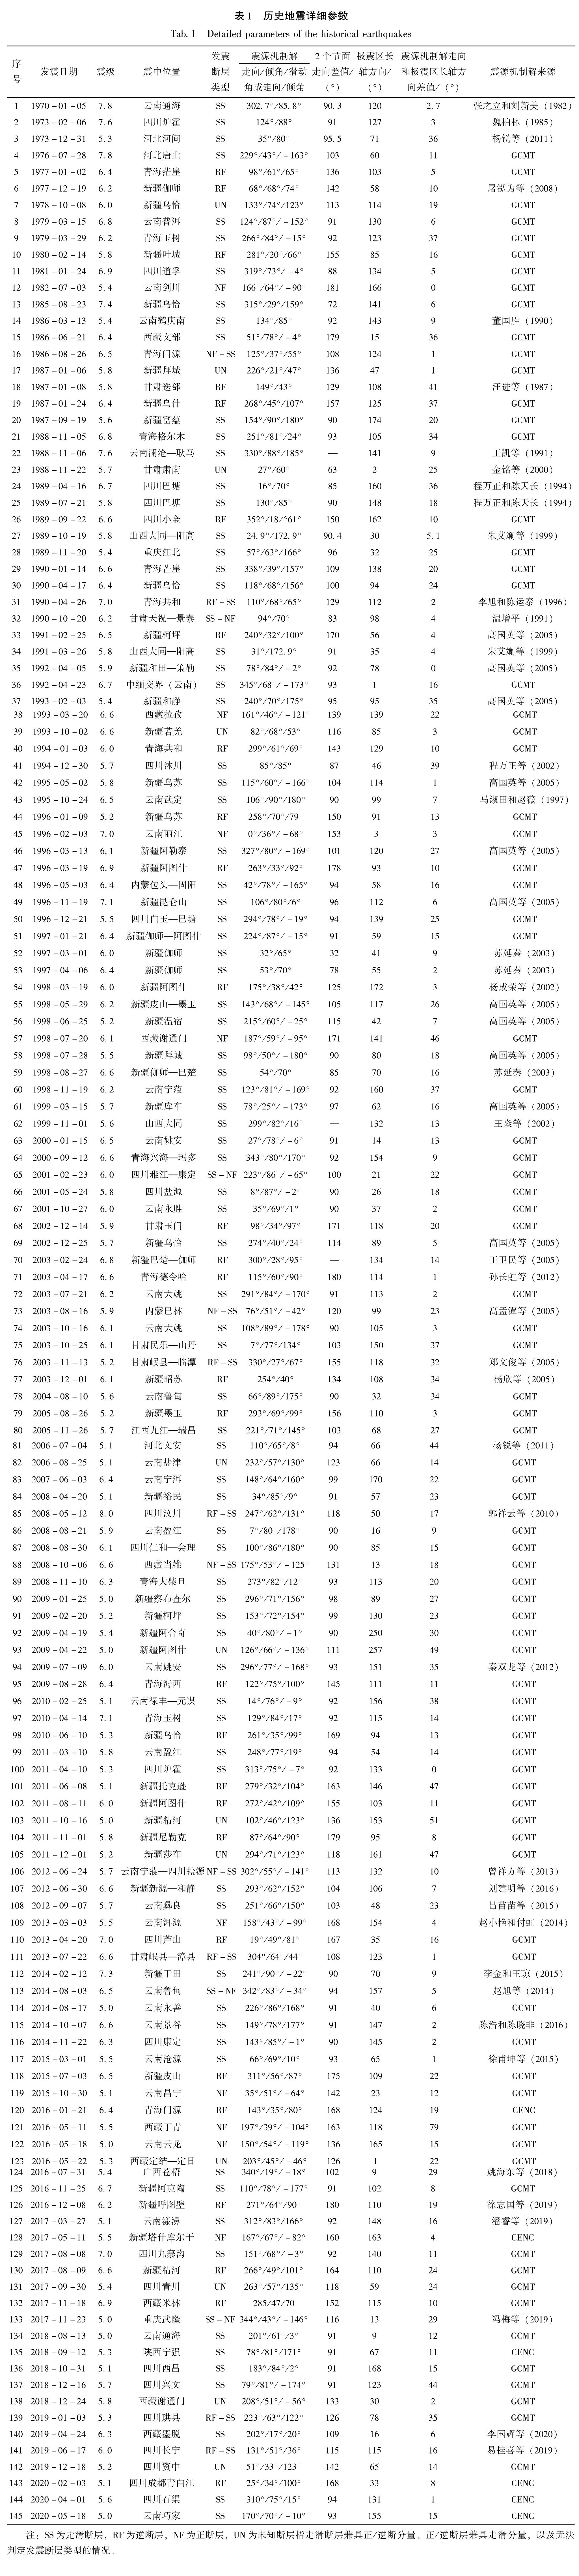 表1 历史地震详细参数<br/>Tab.1 Detailed parameters of the historical earthquakes